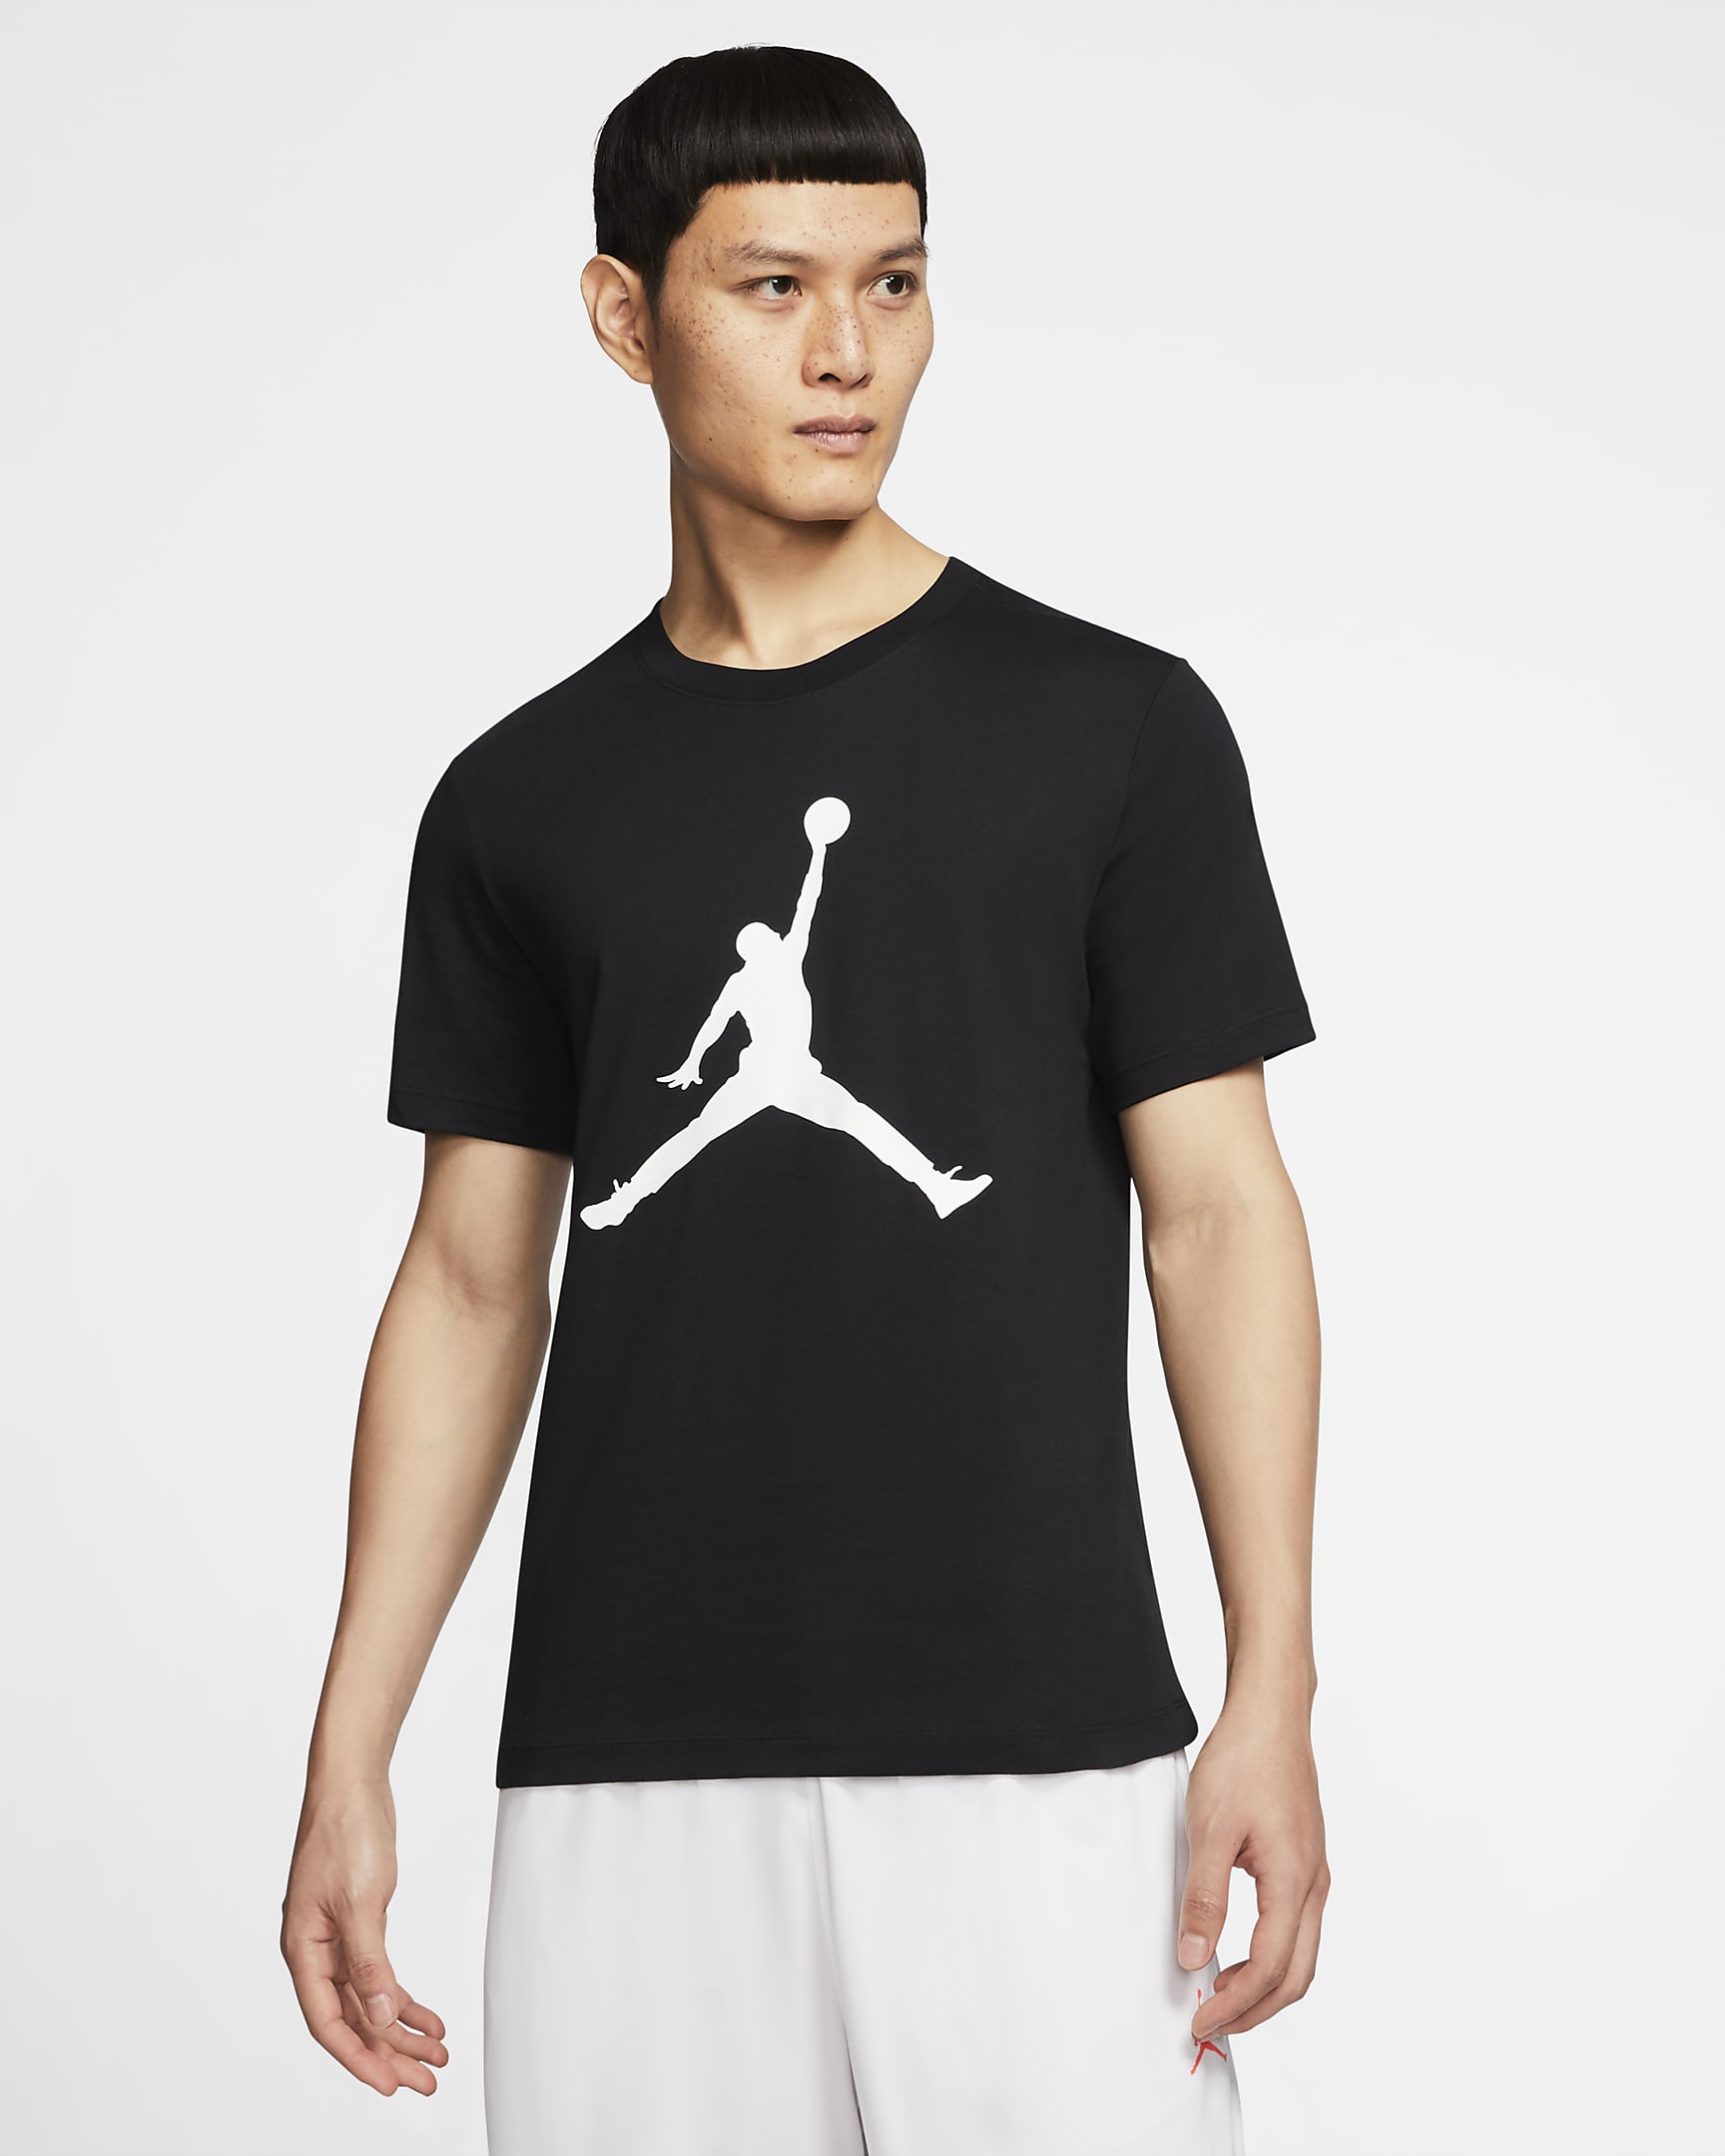 jordan-jumpman-mens-t-shirt-208CL7.png